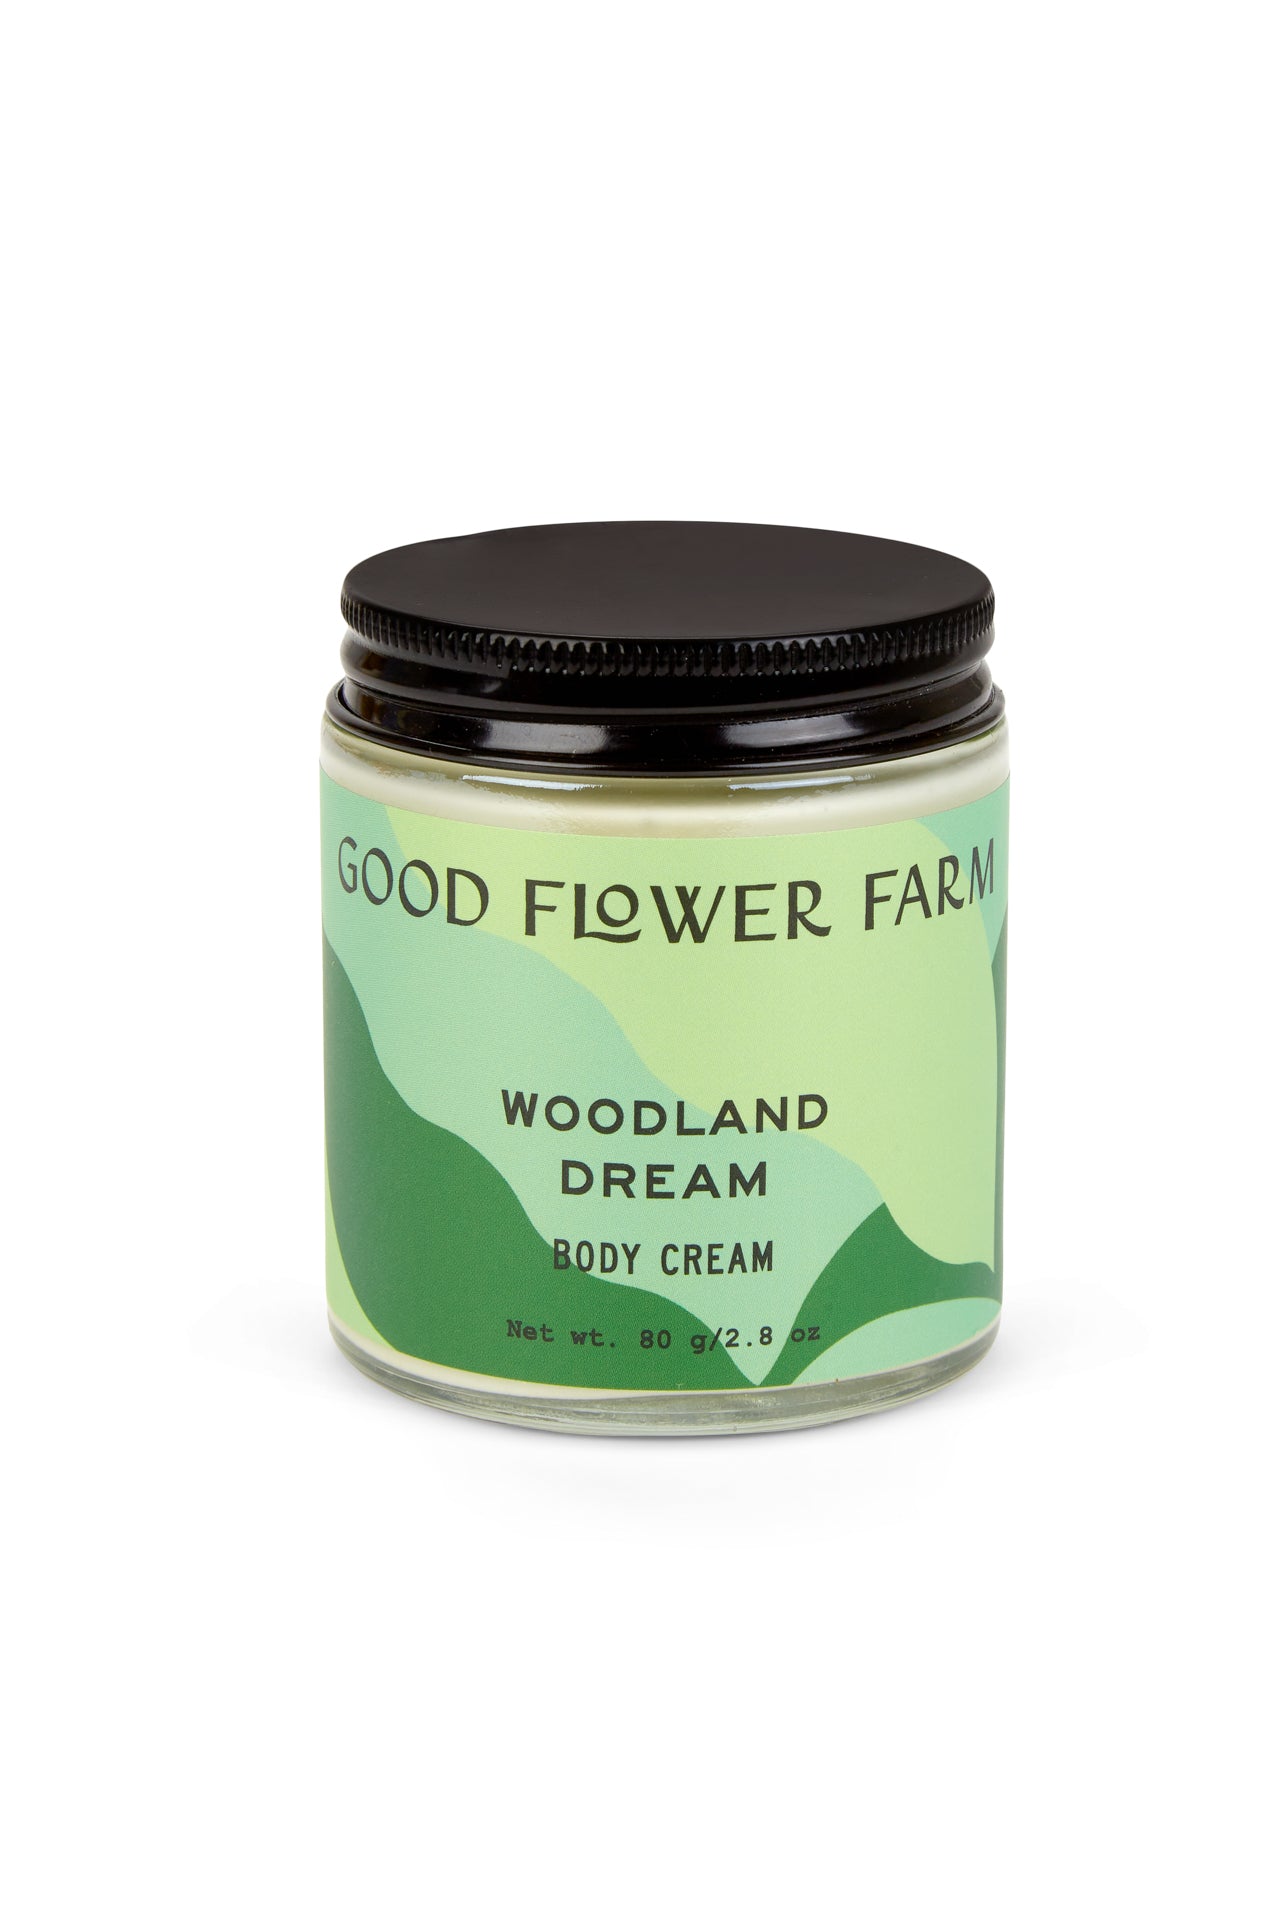 Woodland Dream Organic pine and cedarwood moisturizing body cream by Good Flower Farm